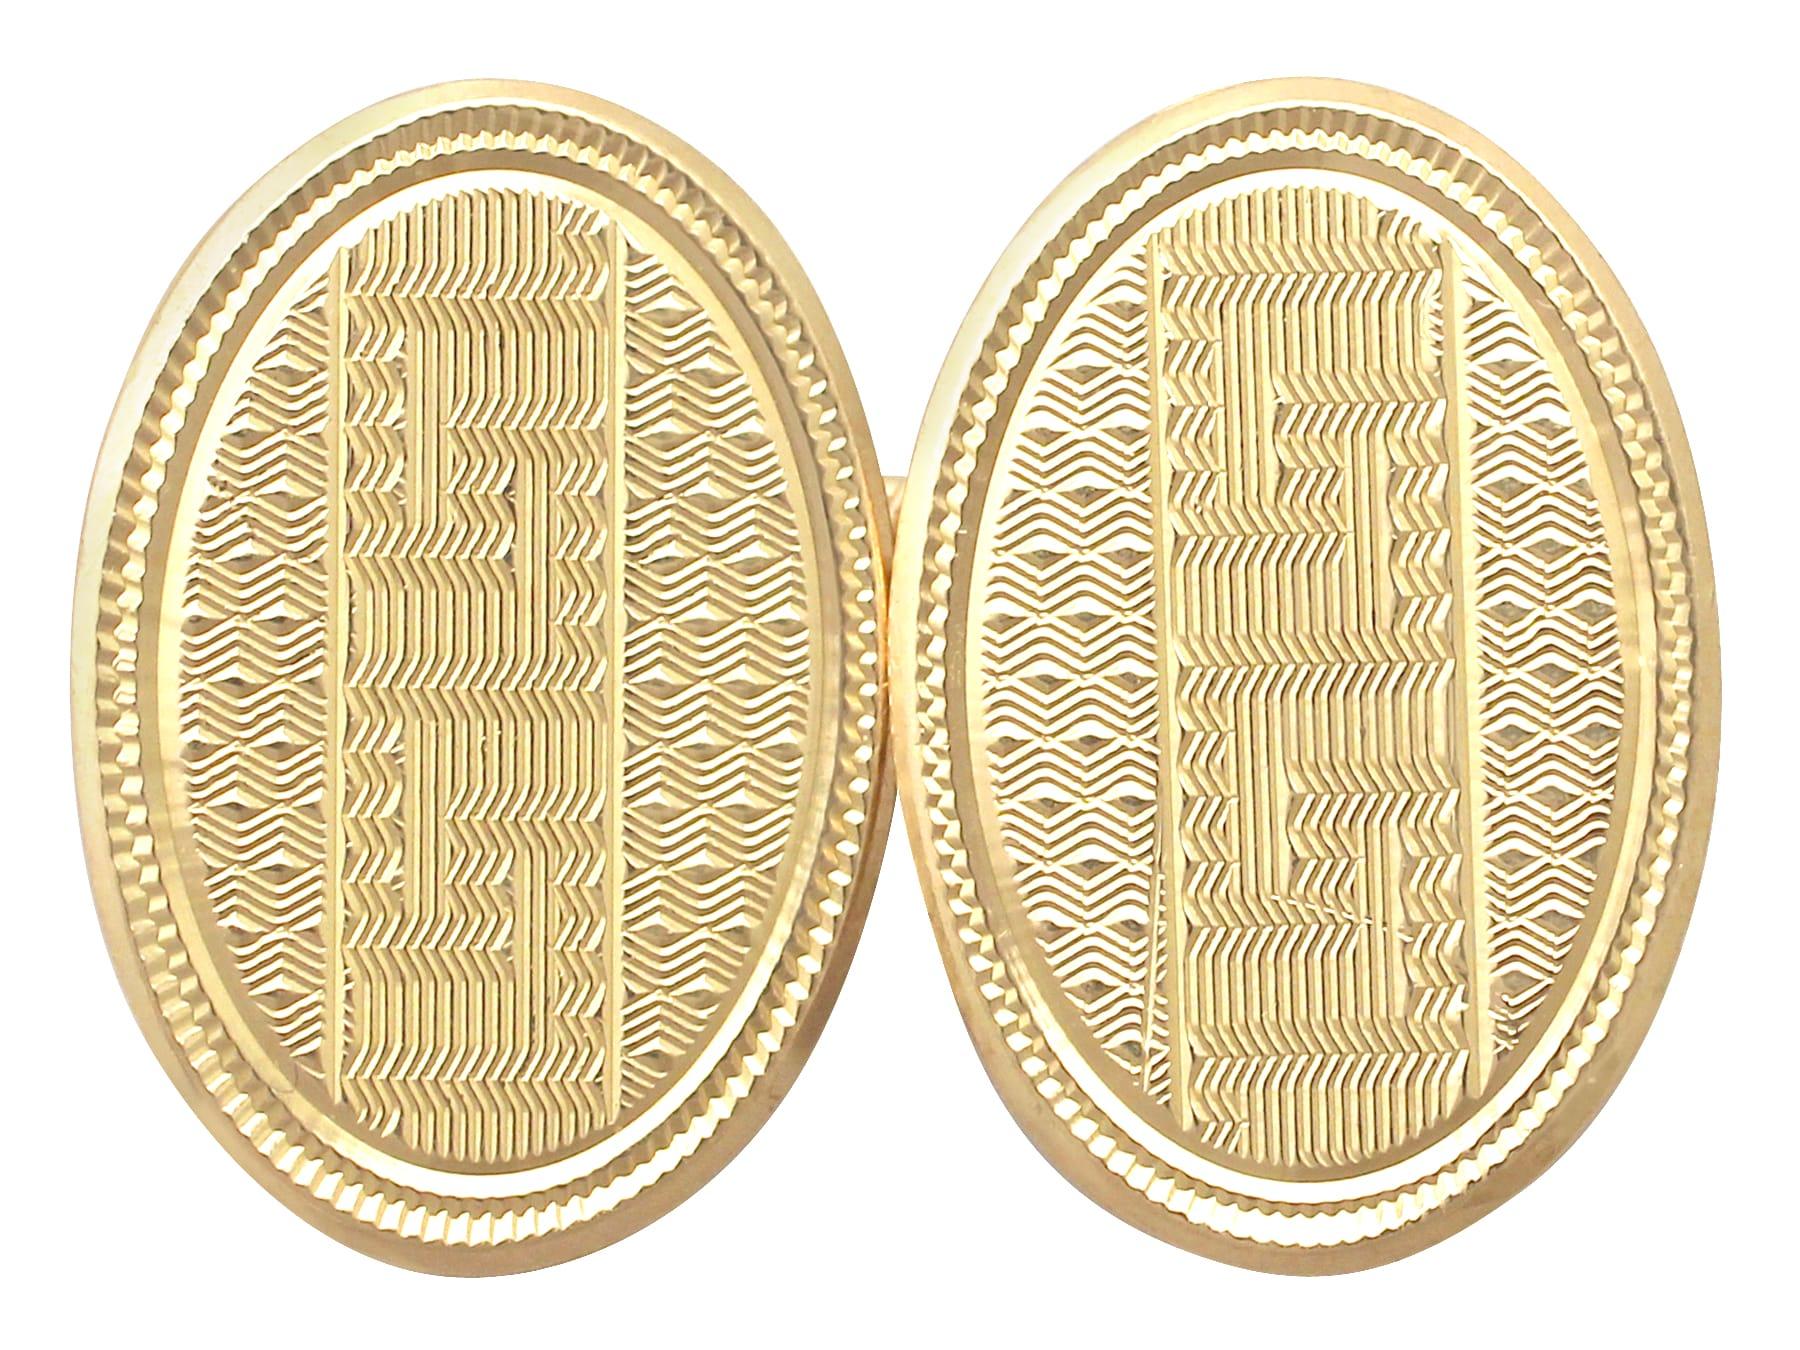 Une paire exceptionnelle, fine et impressionnante de boutons de manchette en or jaune 18 carats ; faisant partie de nos diverses collections de bijoux anciens et de bijoux de succession.

Ces boutons de manchette étonnants, fins et impressionnants,